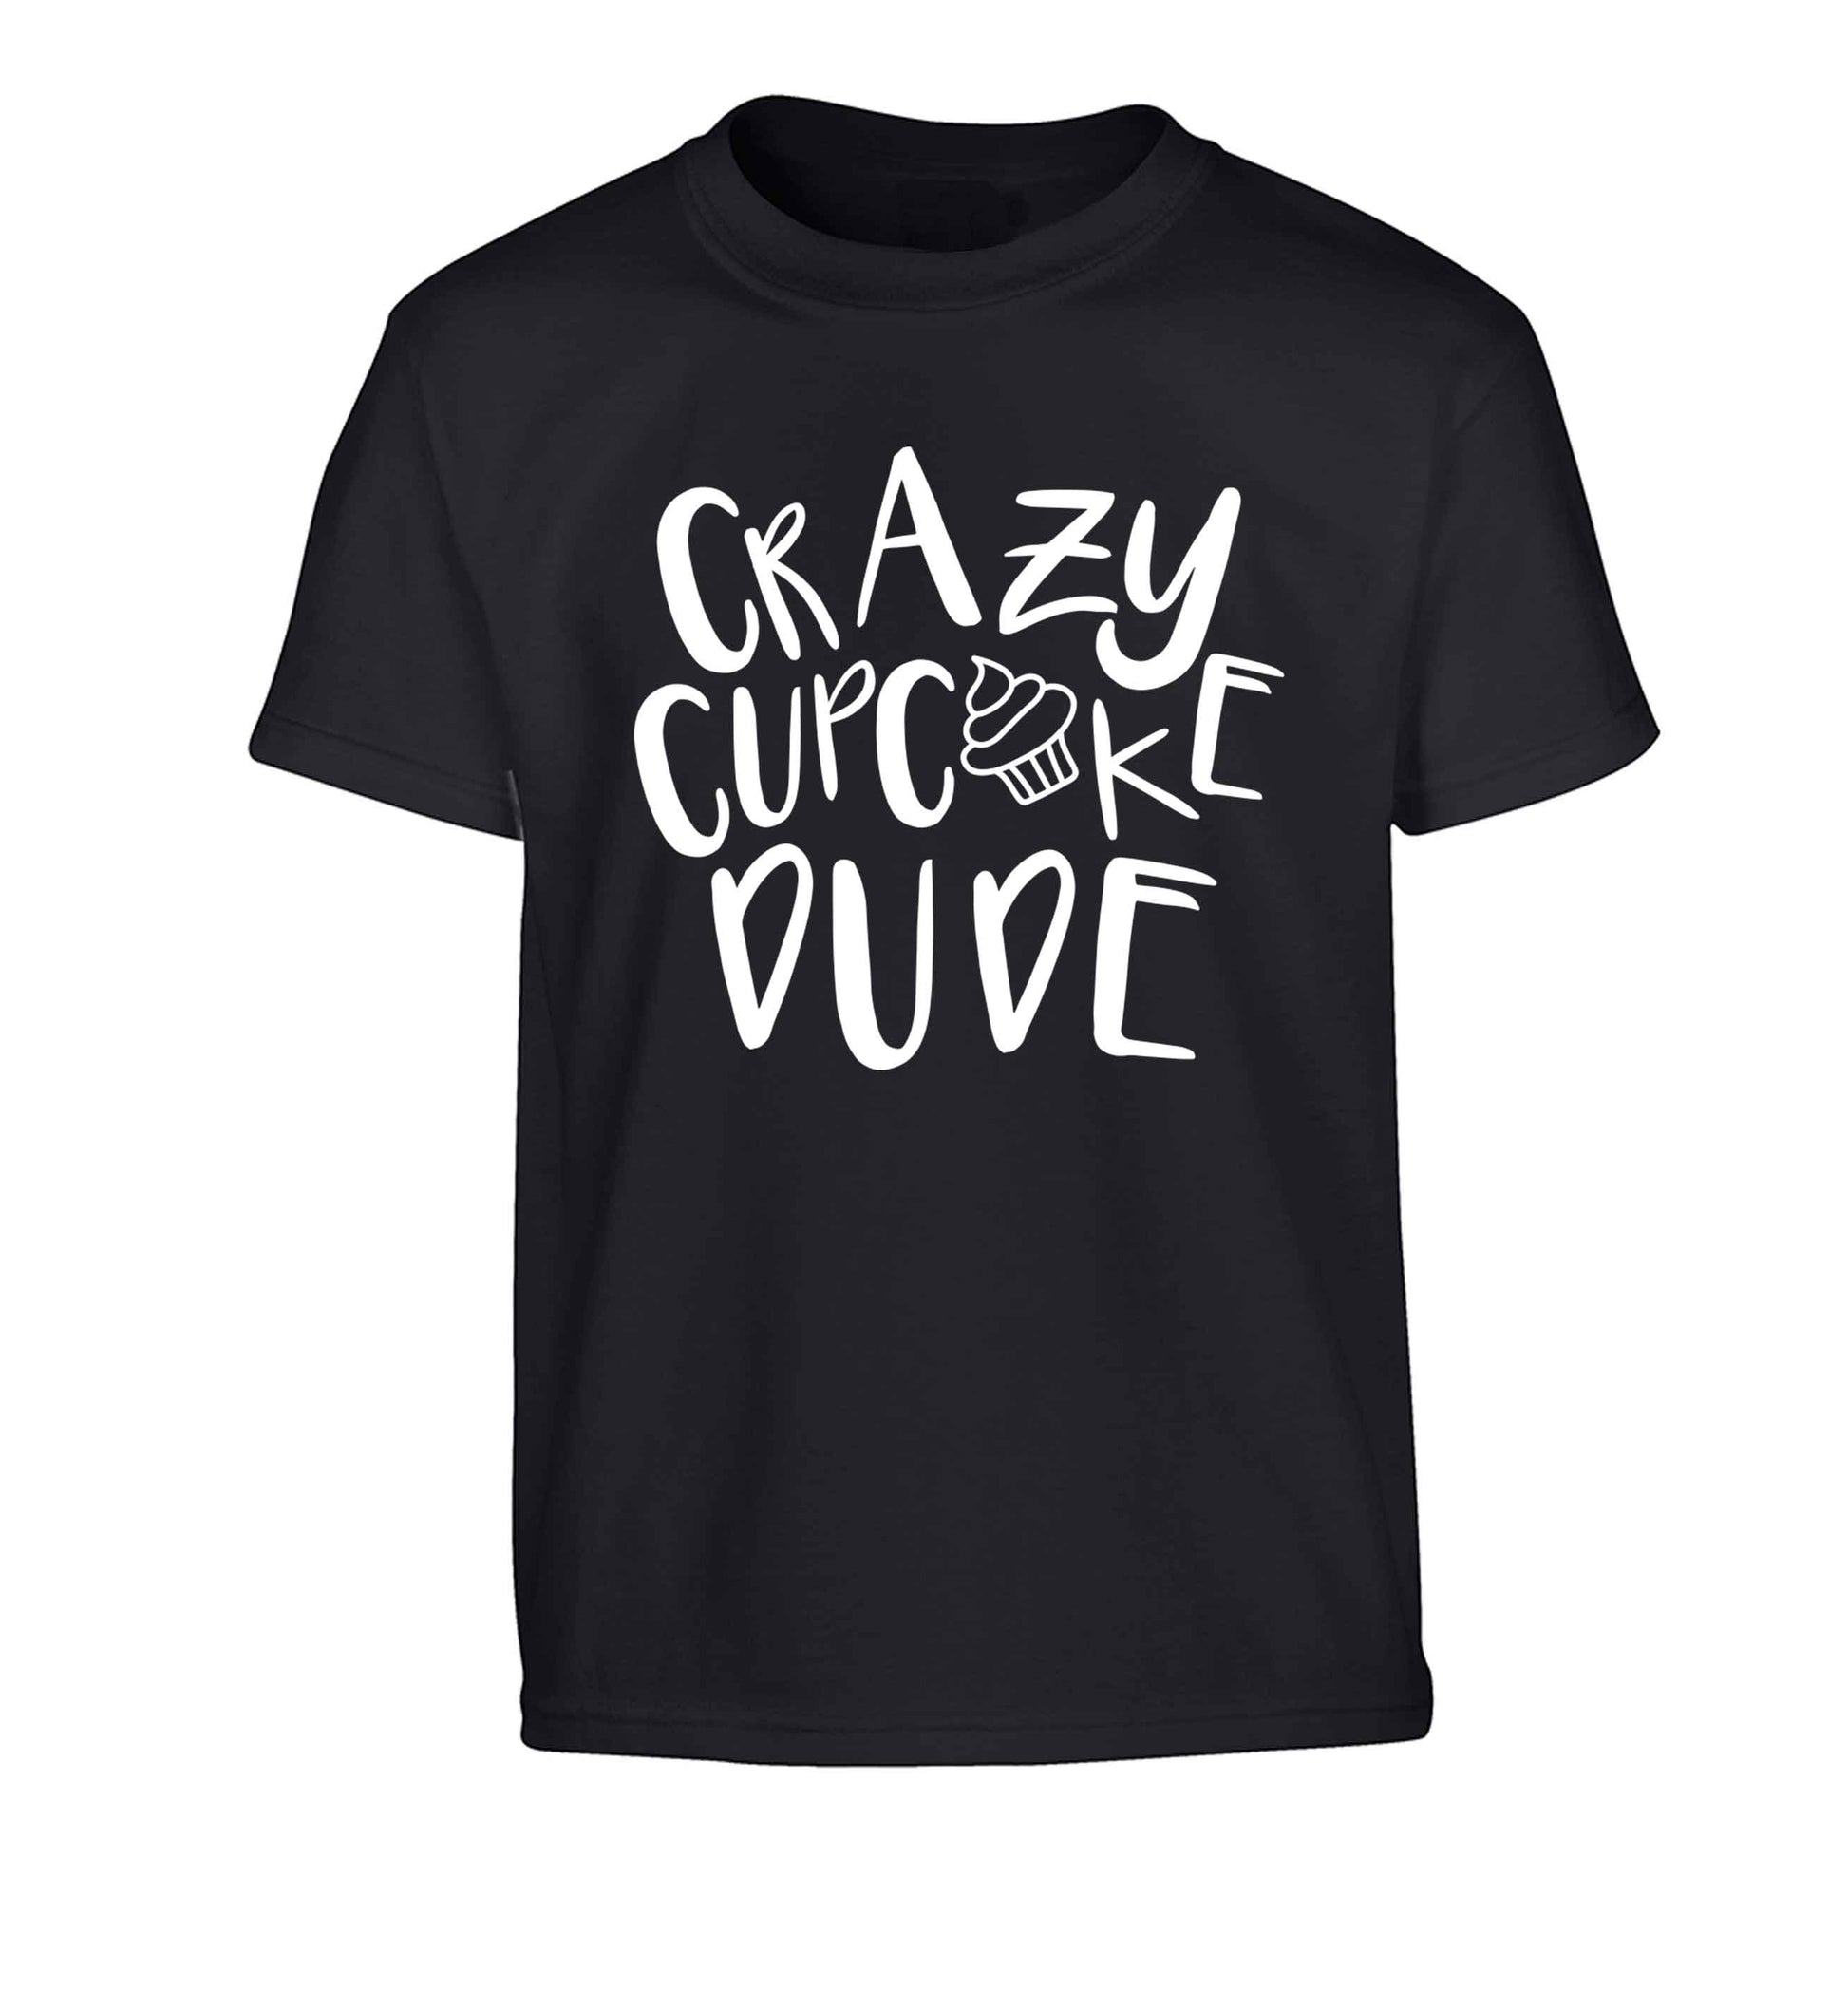 Crazy cupcake dude Children's black Tshirt 12-13 Years